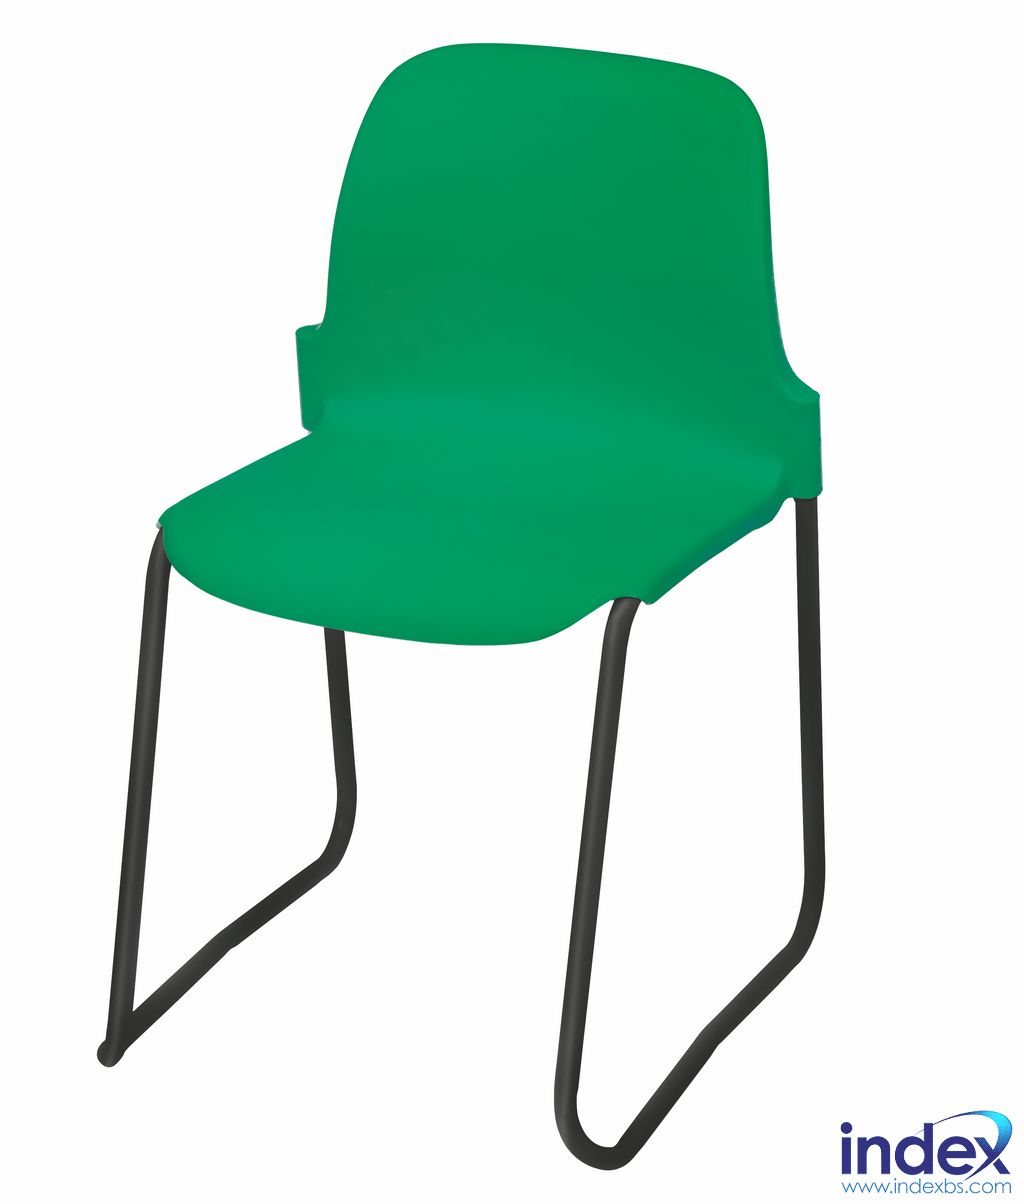 Proform Masterstack Chair Range